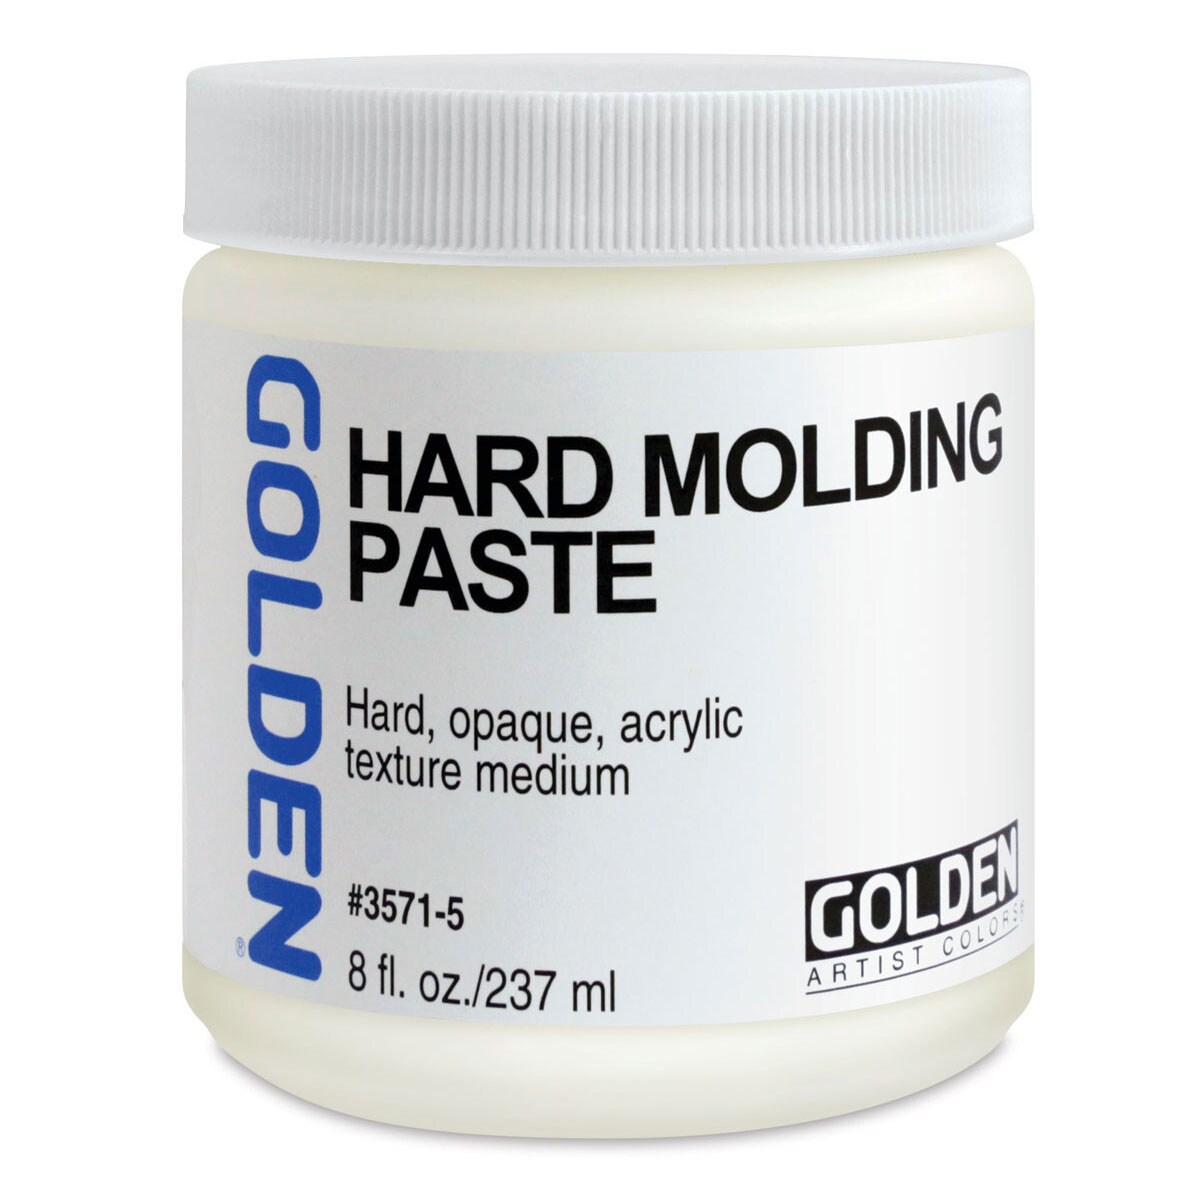  Golden Artist Colors - Hard Molding Paste - 8 oz Jar